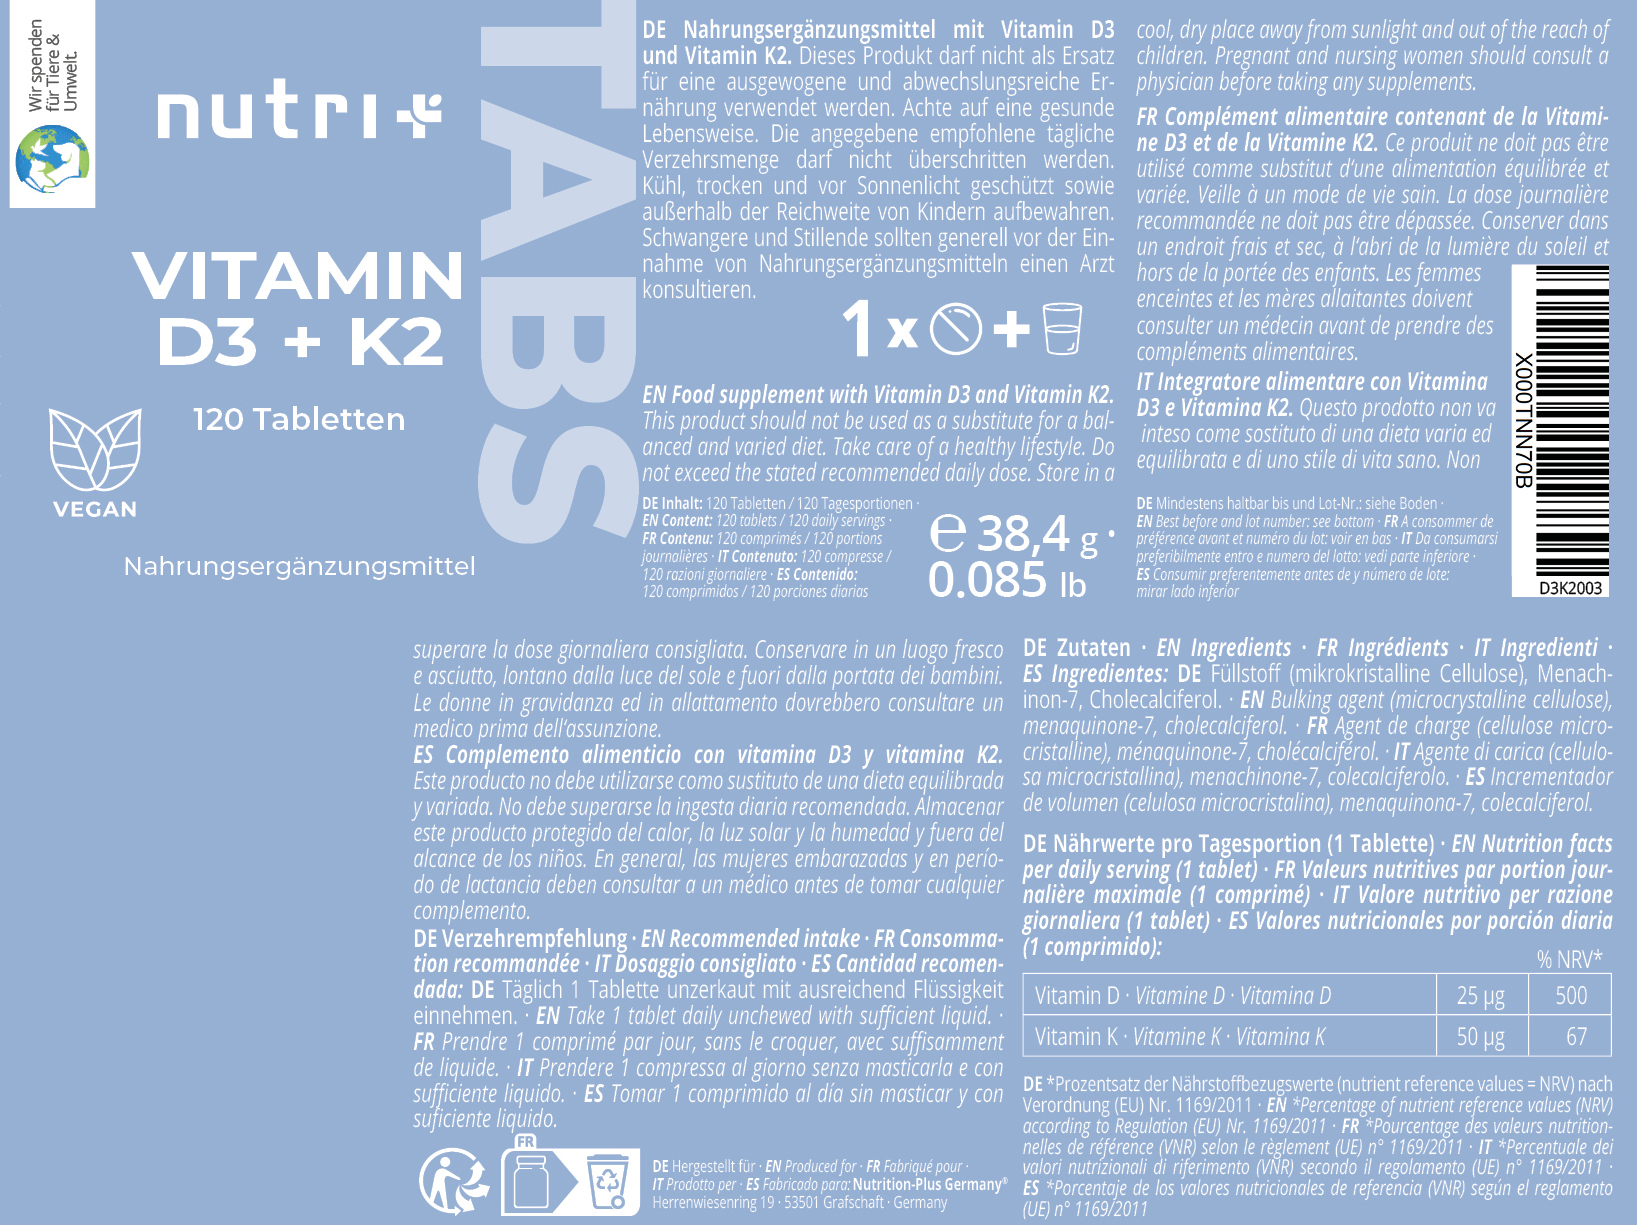 Vitamin D3 + K2 Depot Tabletten